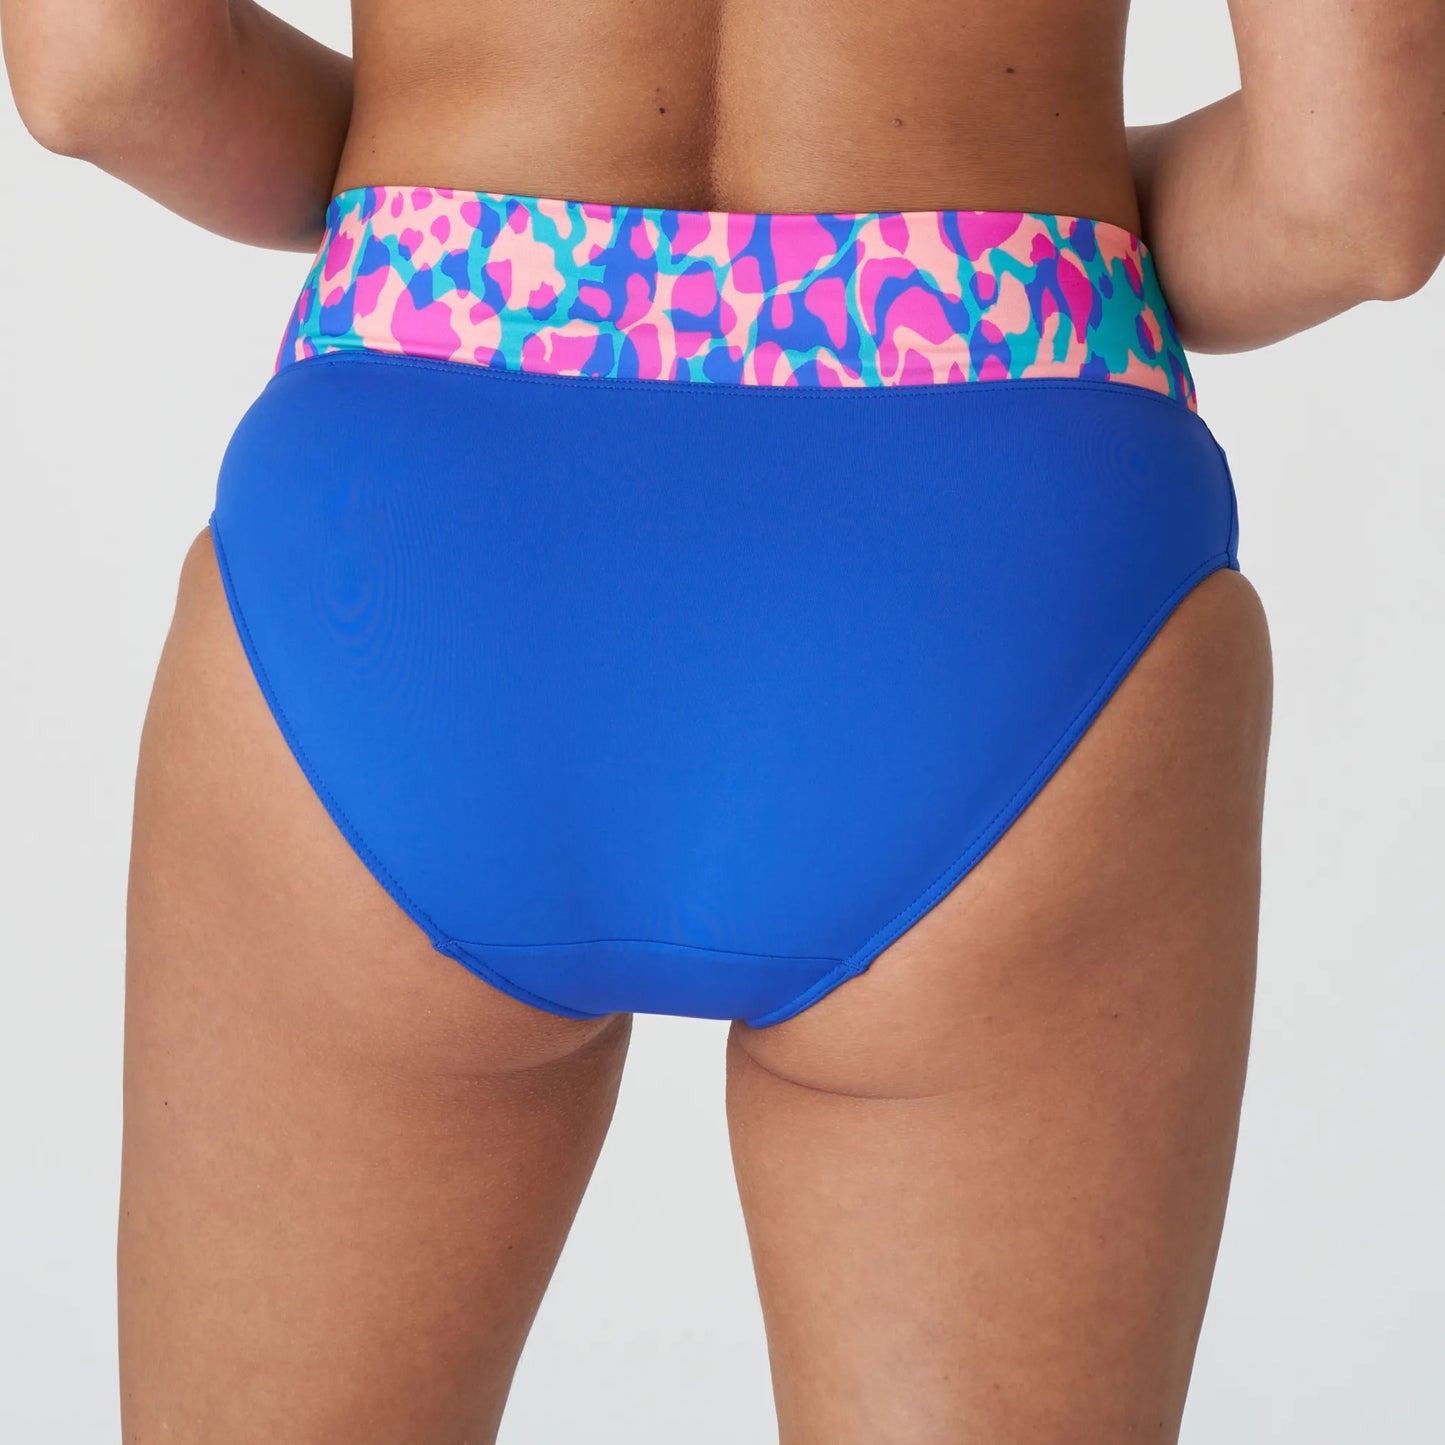 PrimaDonna Karpen Foldover Bikini Bottom